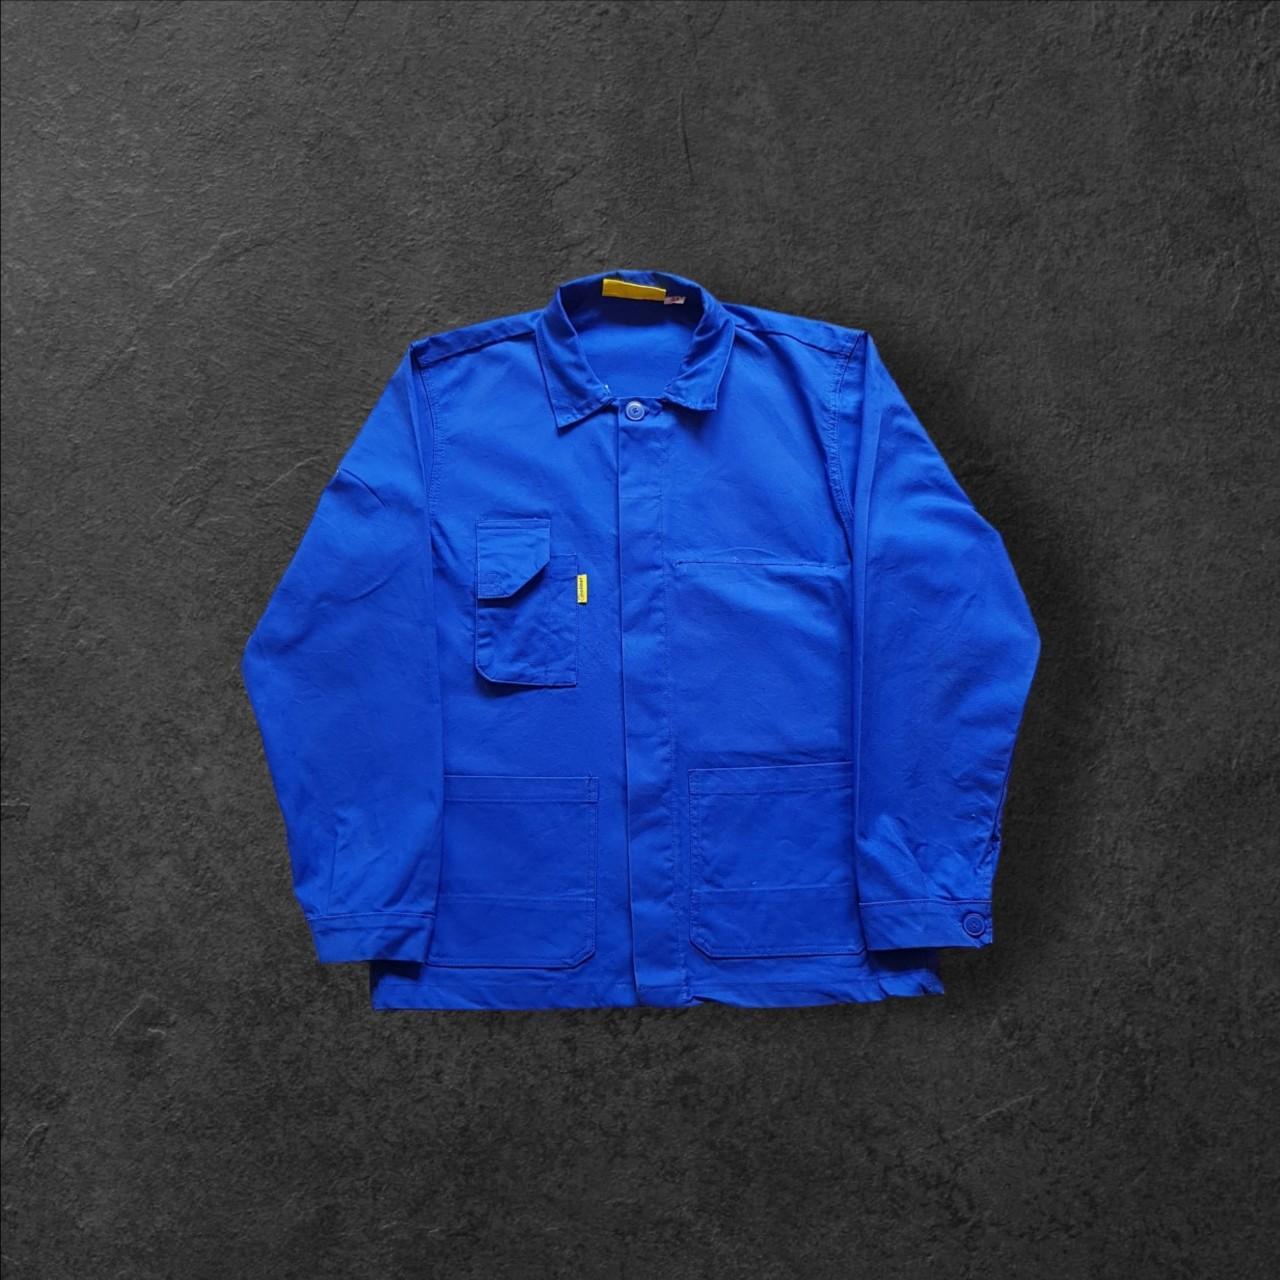 Vintage french work chore shirt jacket